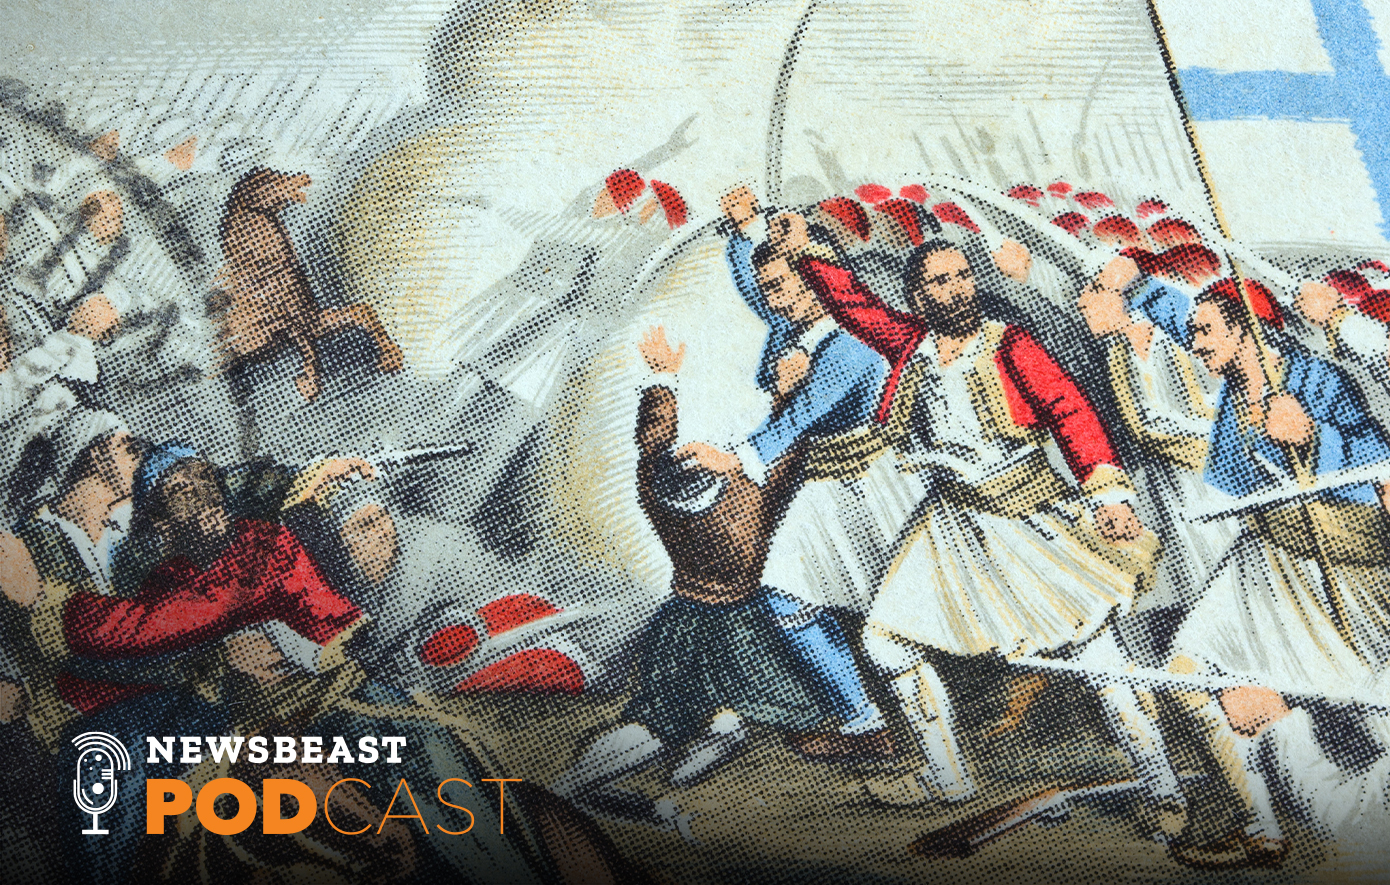 Οι 5 μάχες που καθόρισαν την πορεία της Επανάστασης του 1821: Από την Άλωση της Τριπολιτσάς μέχρι τη Μάχη της Πέτρας